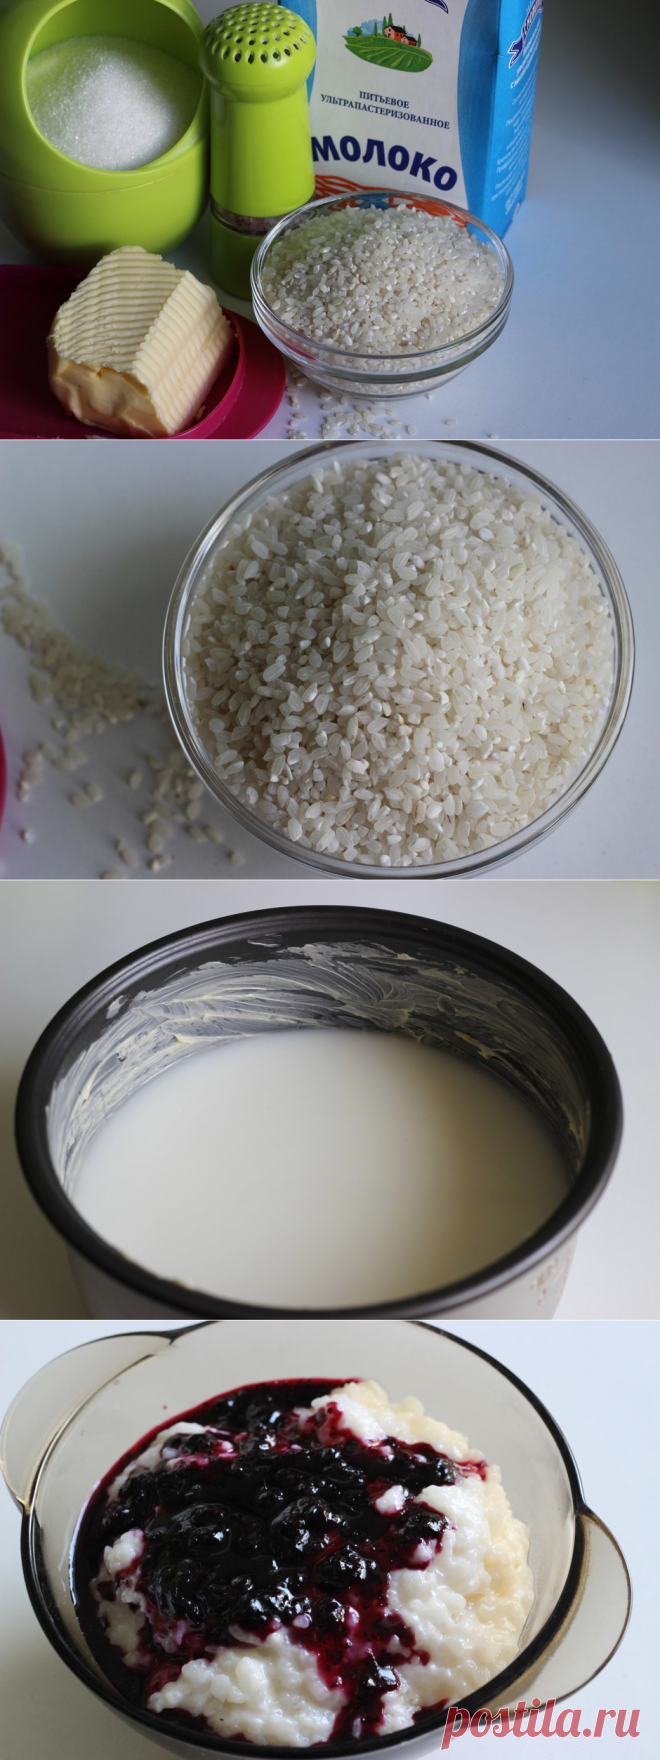 Рисовая каша в мультиварке - рецепт - как приготовить - ингредиенты, состав, время приготовления - Леди Mail.Ru